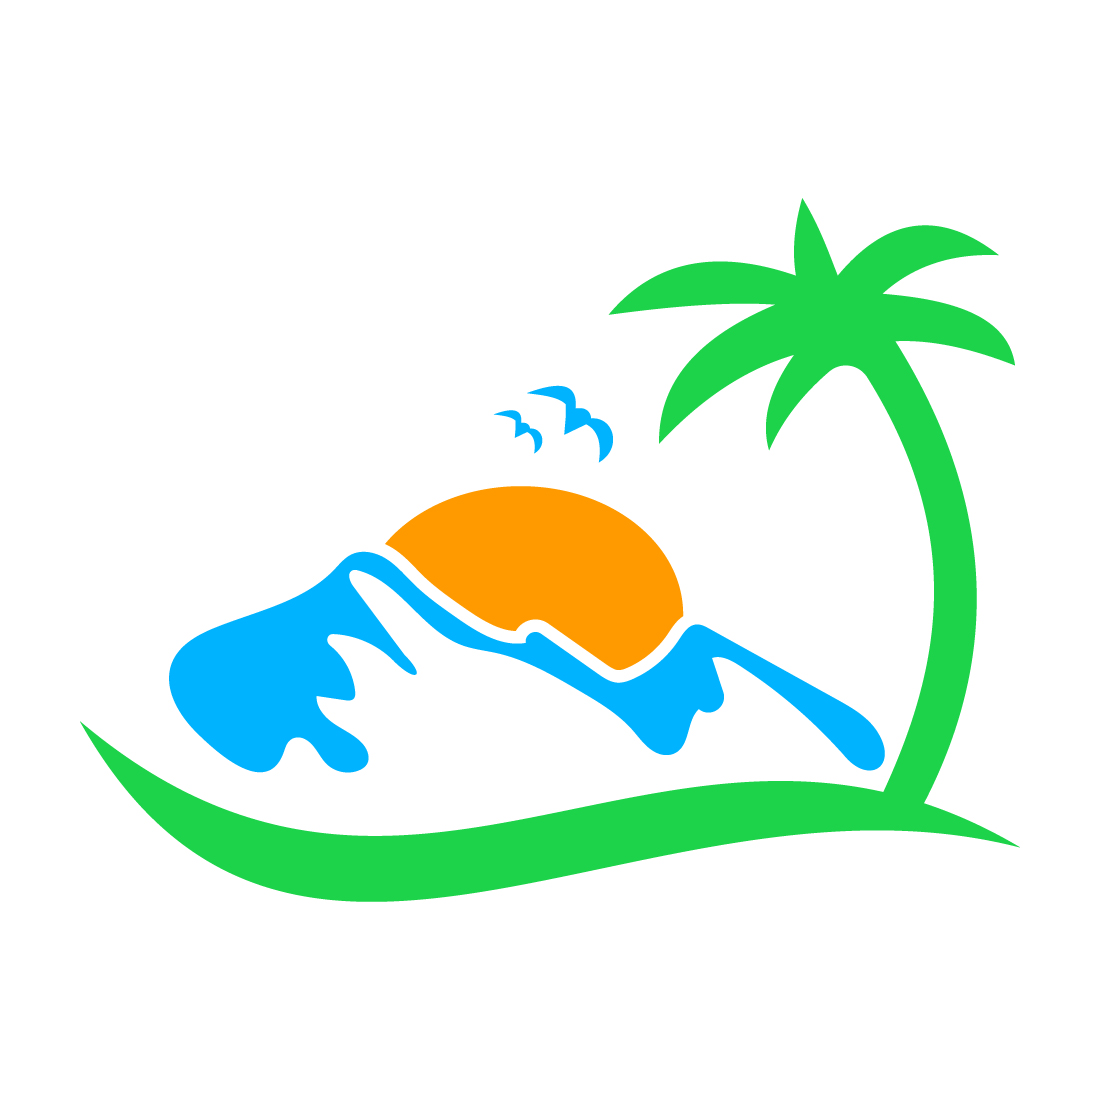 Creative Beach logo design, Vector design concept preview image.